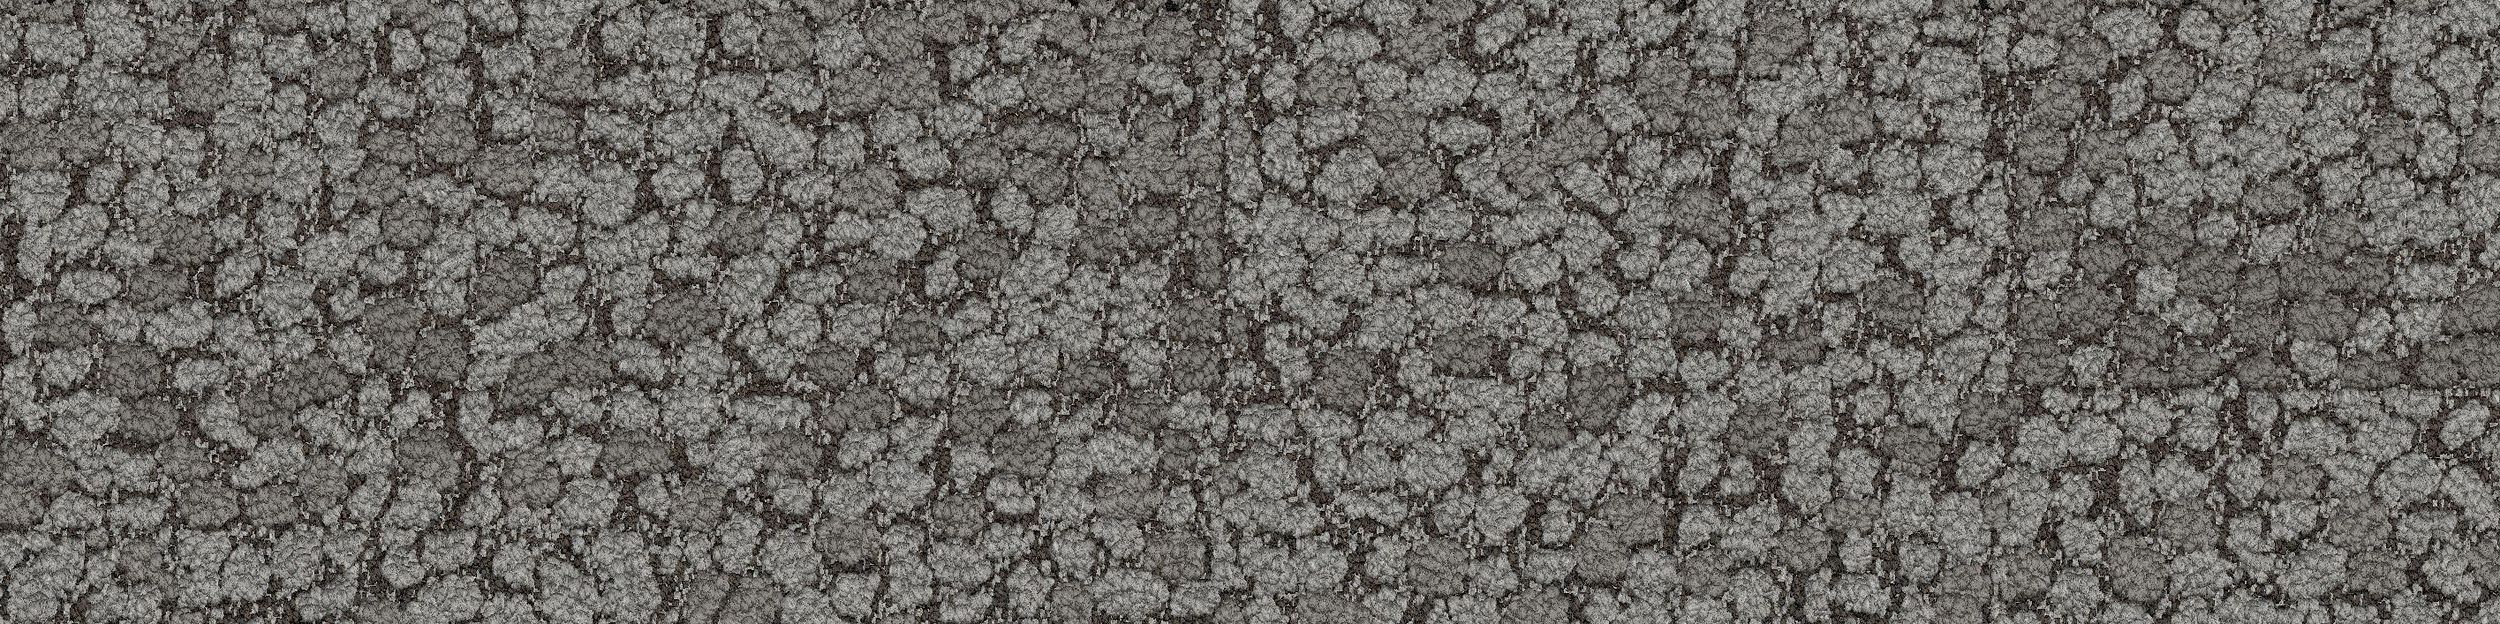 HN840 Carpet Tile In Nickel image number 2